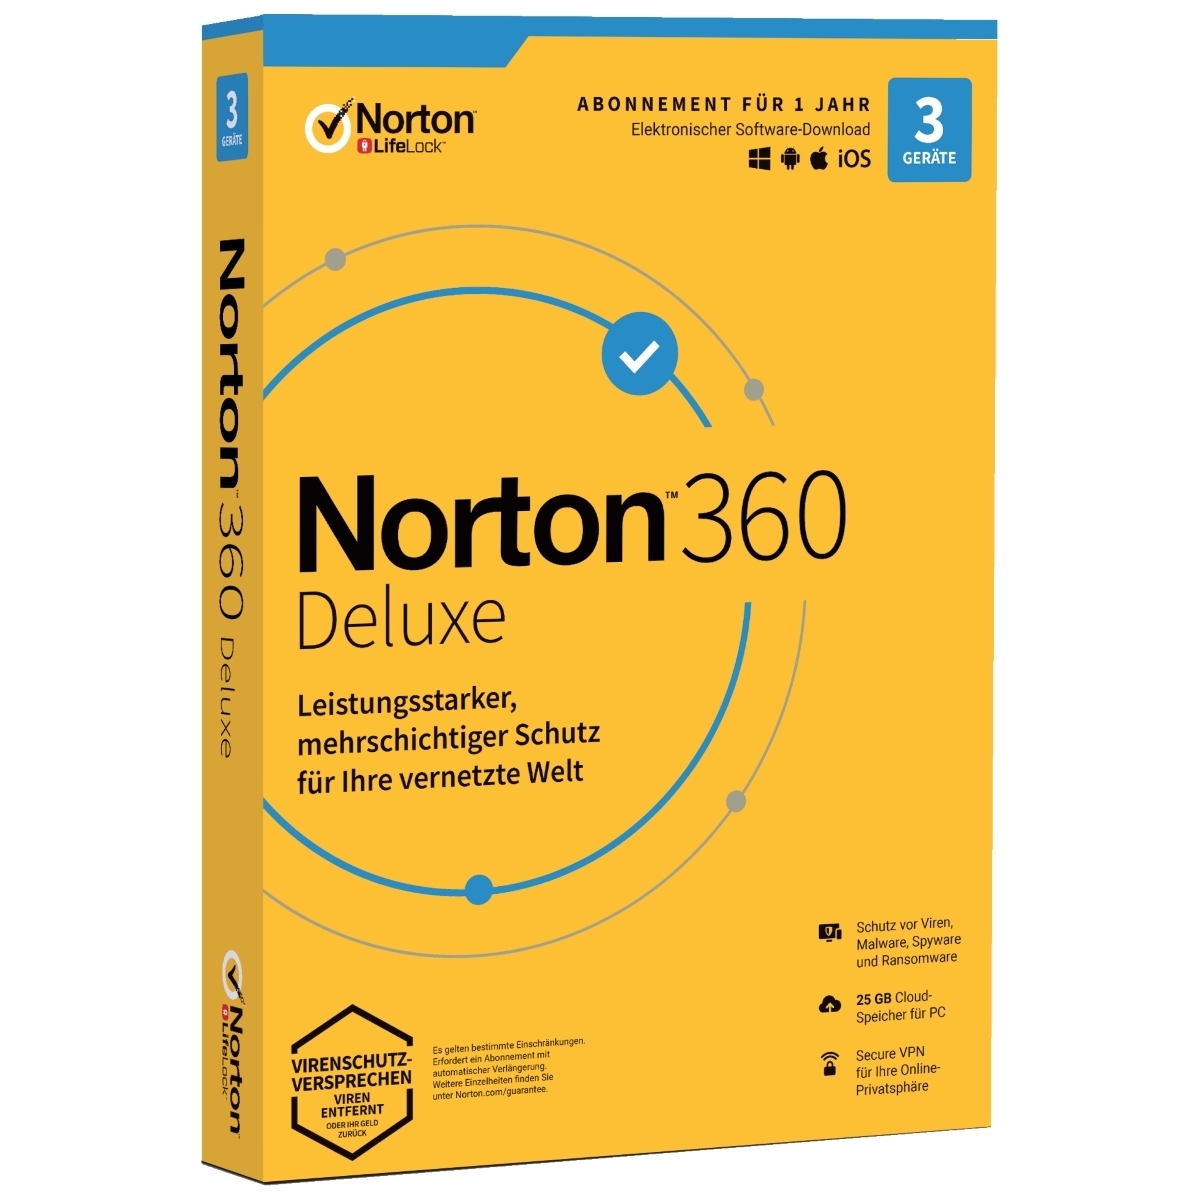 norton 360 deluxe crack